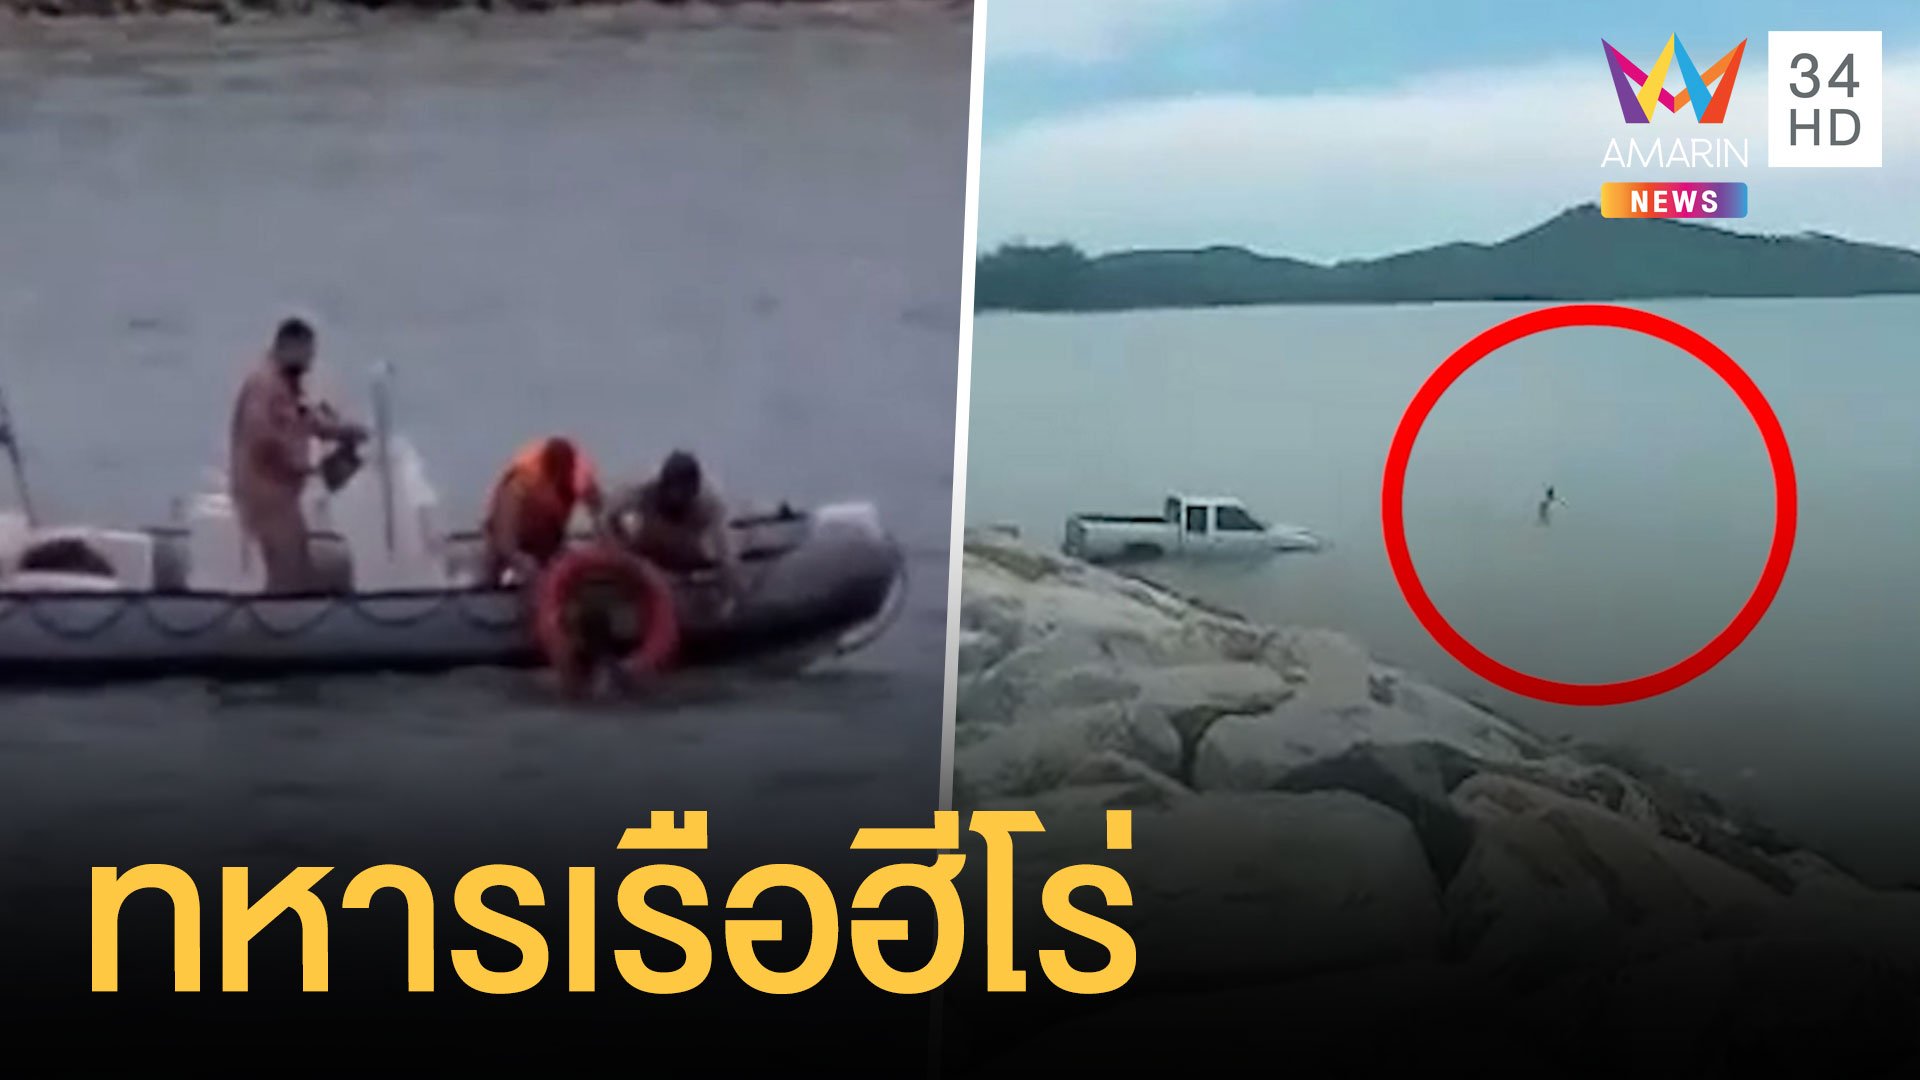 ทหารเรือฮีโร่ กระโดดน้ำช่วยหนุ่มขับรถพุ่งลงทะเล | ข่าวอรุณอมรินทร์ | 28 ก.ย. 64 | AMARIN TVHD34